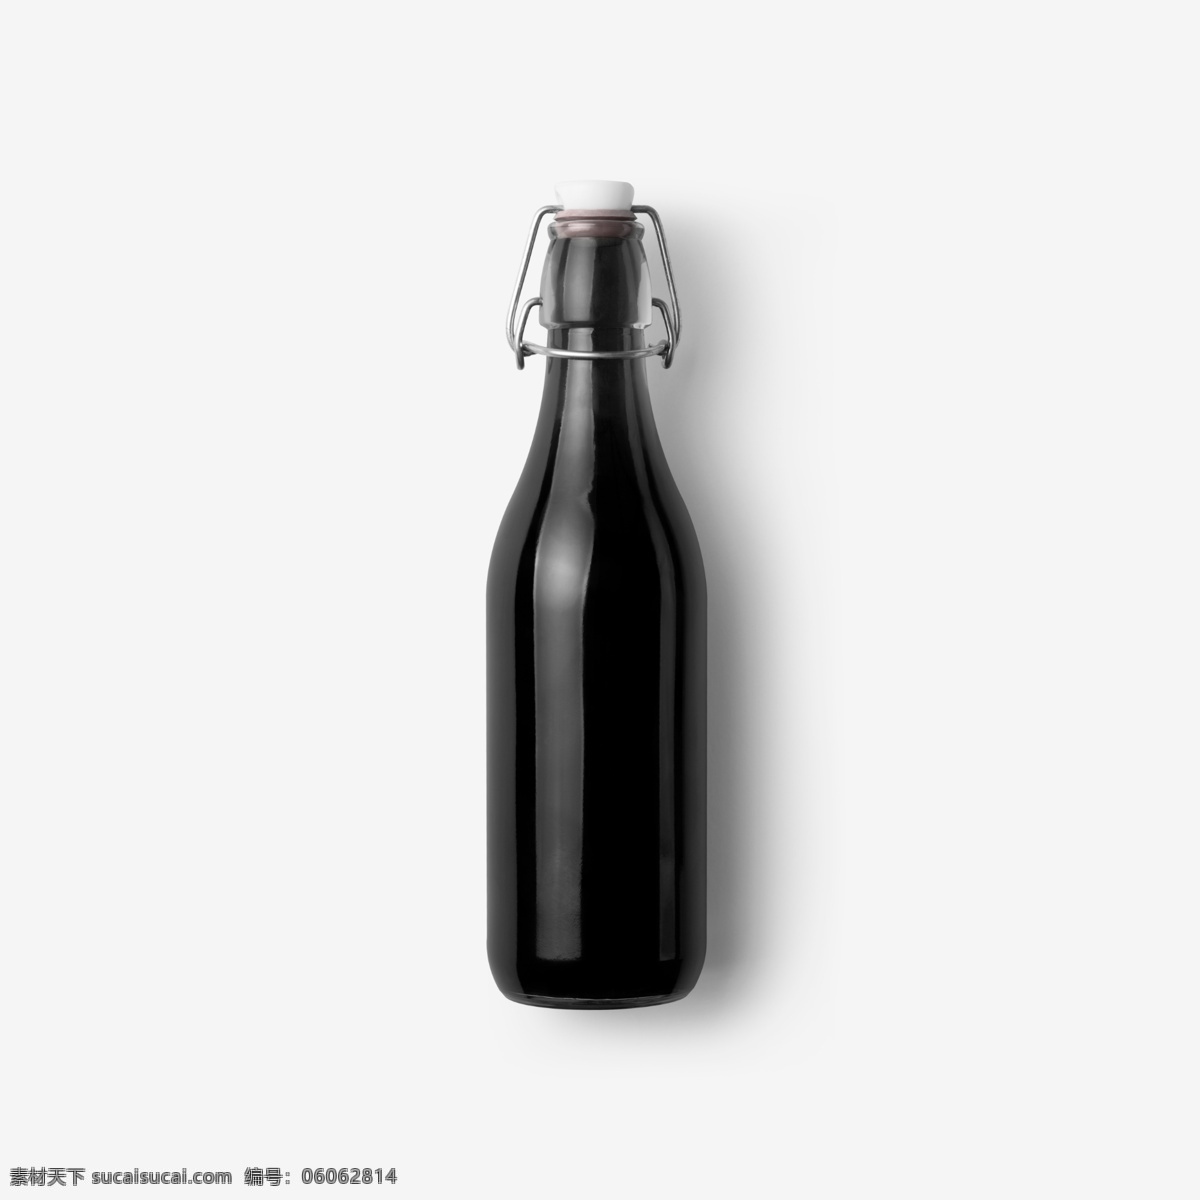 平面 vi 提案 样机 智能对象 玻璃瓶 红酒瓶 酱油瓶 洋酒 高端 大气 上档次 瓶子包装 包装瓶 酒瓶 贴图模板